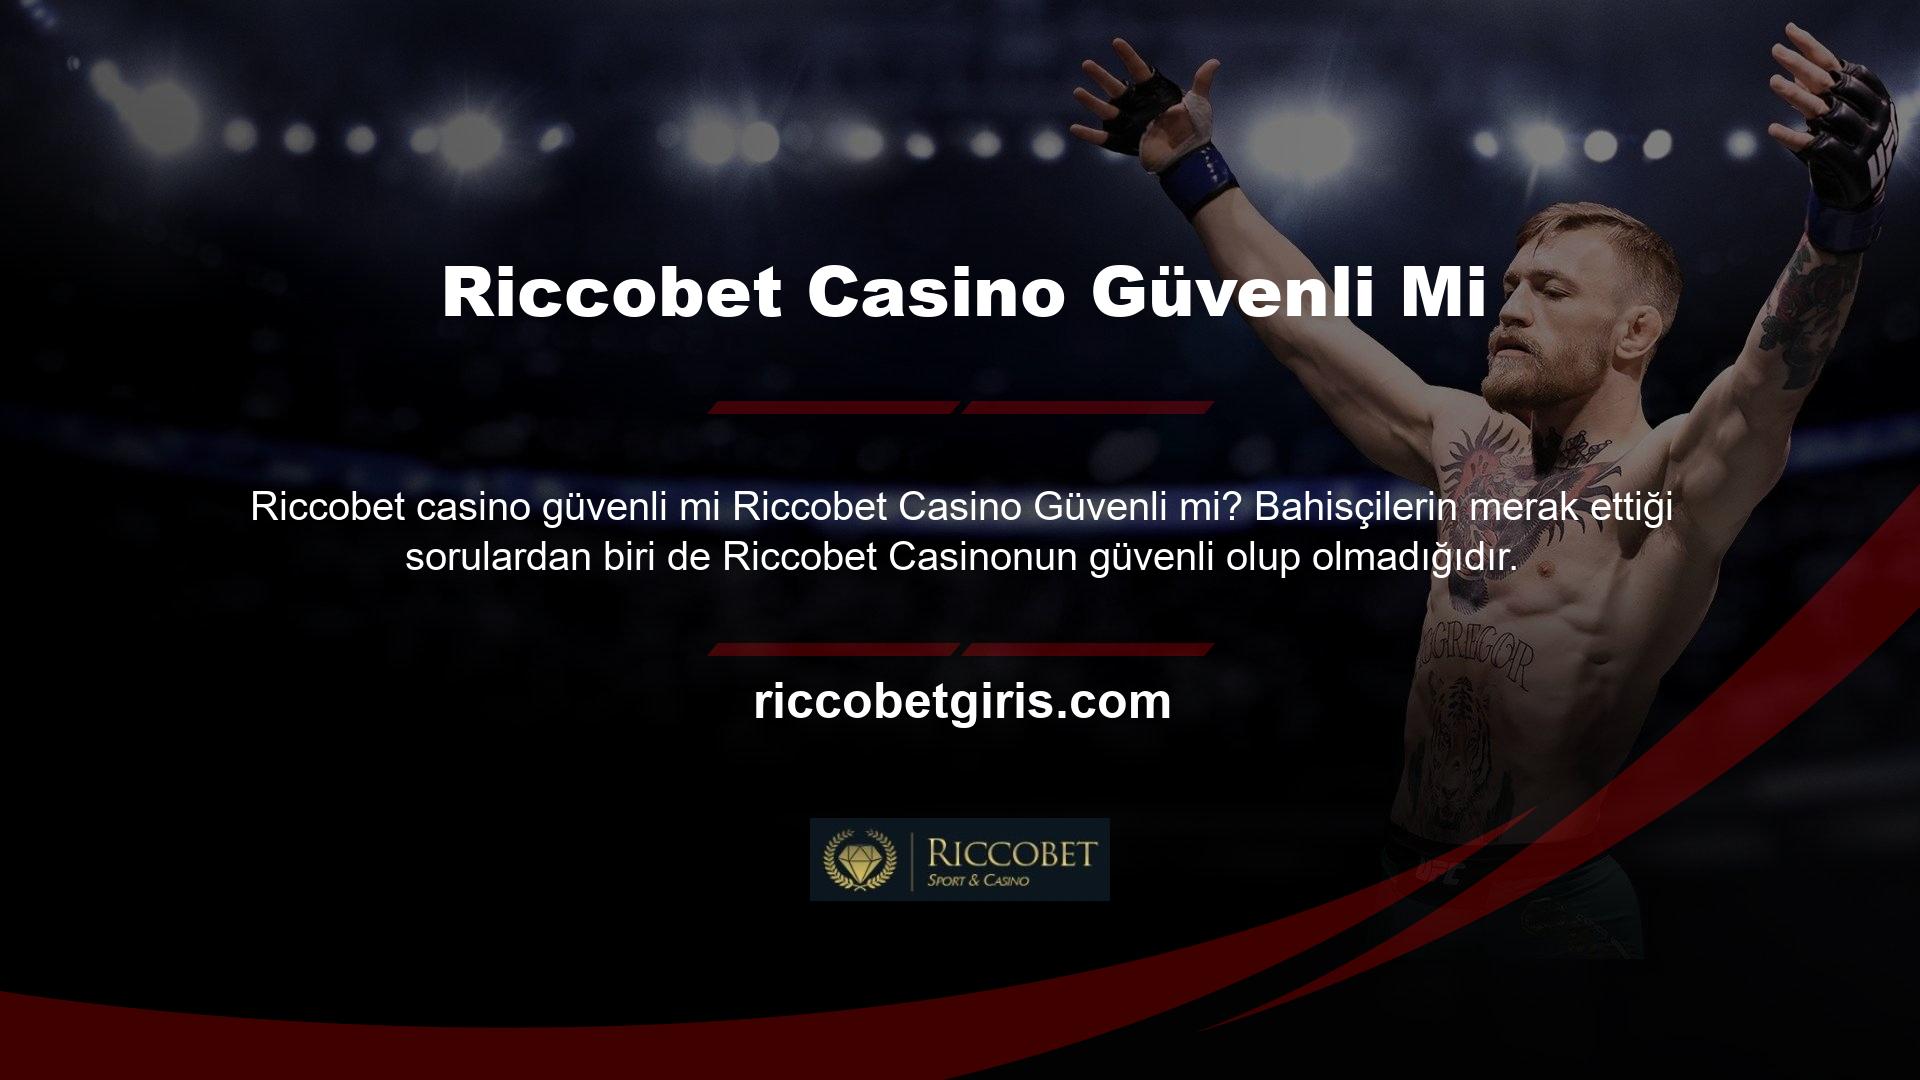 Riccobet dünyanın önde gelen casino altyapı şirketlerinden bazılarıyla çalışmaktadır